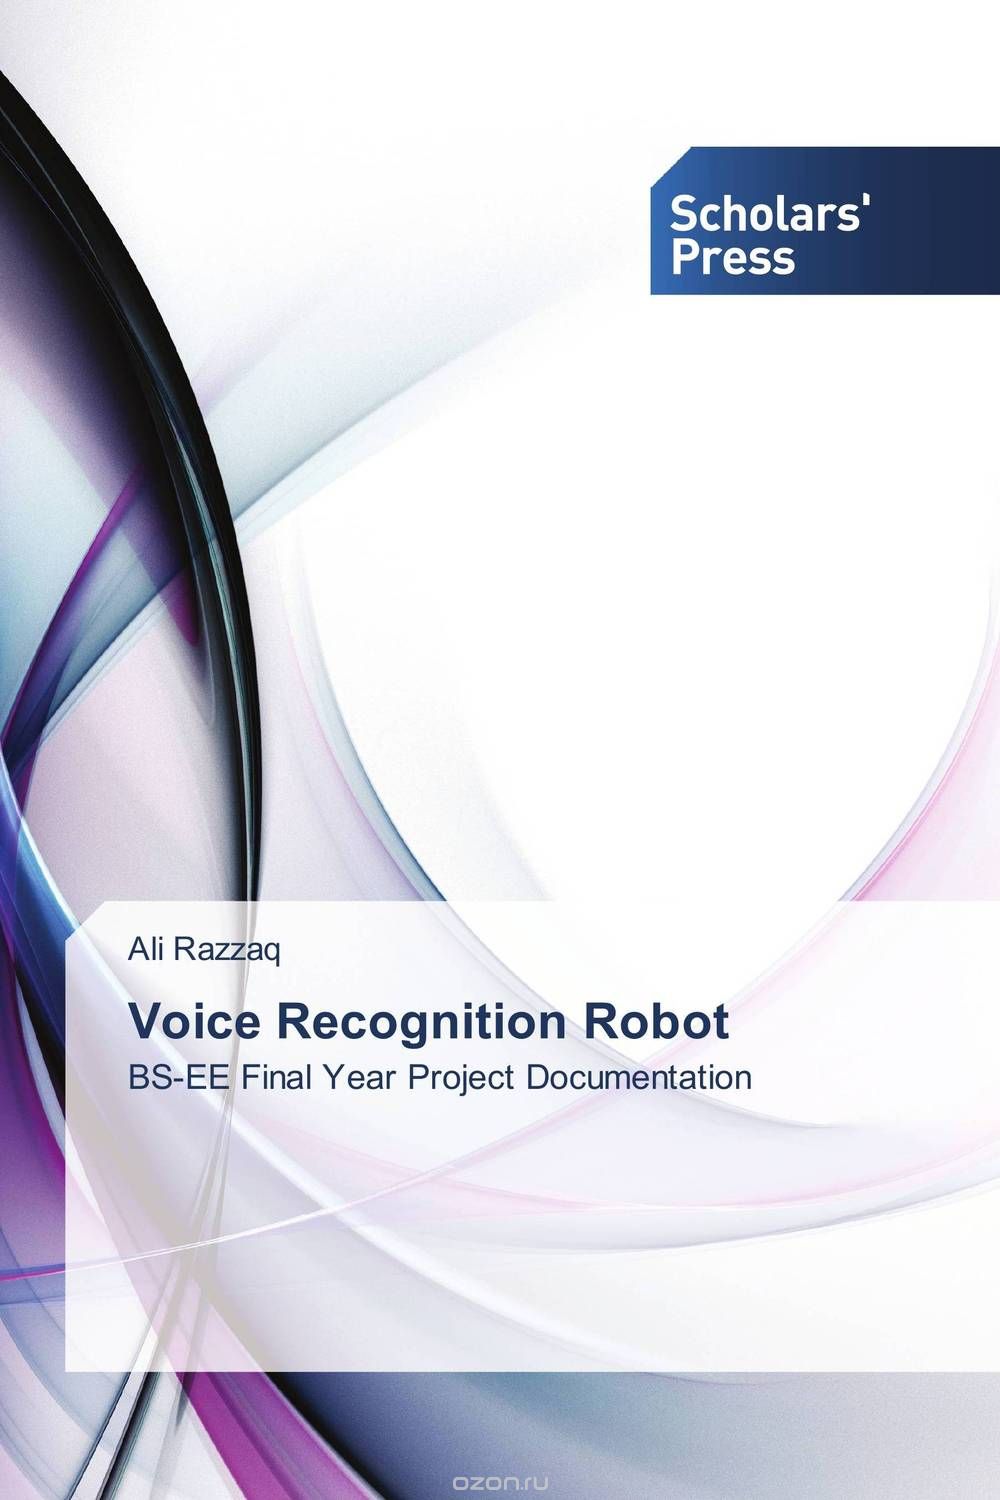 Скачать книгу "Voice Recognition Robot"